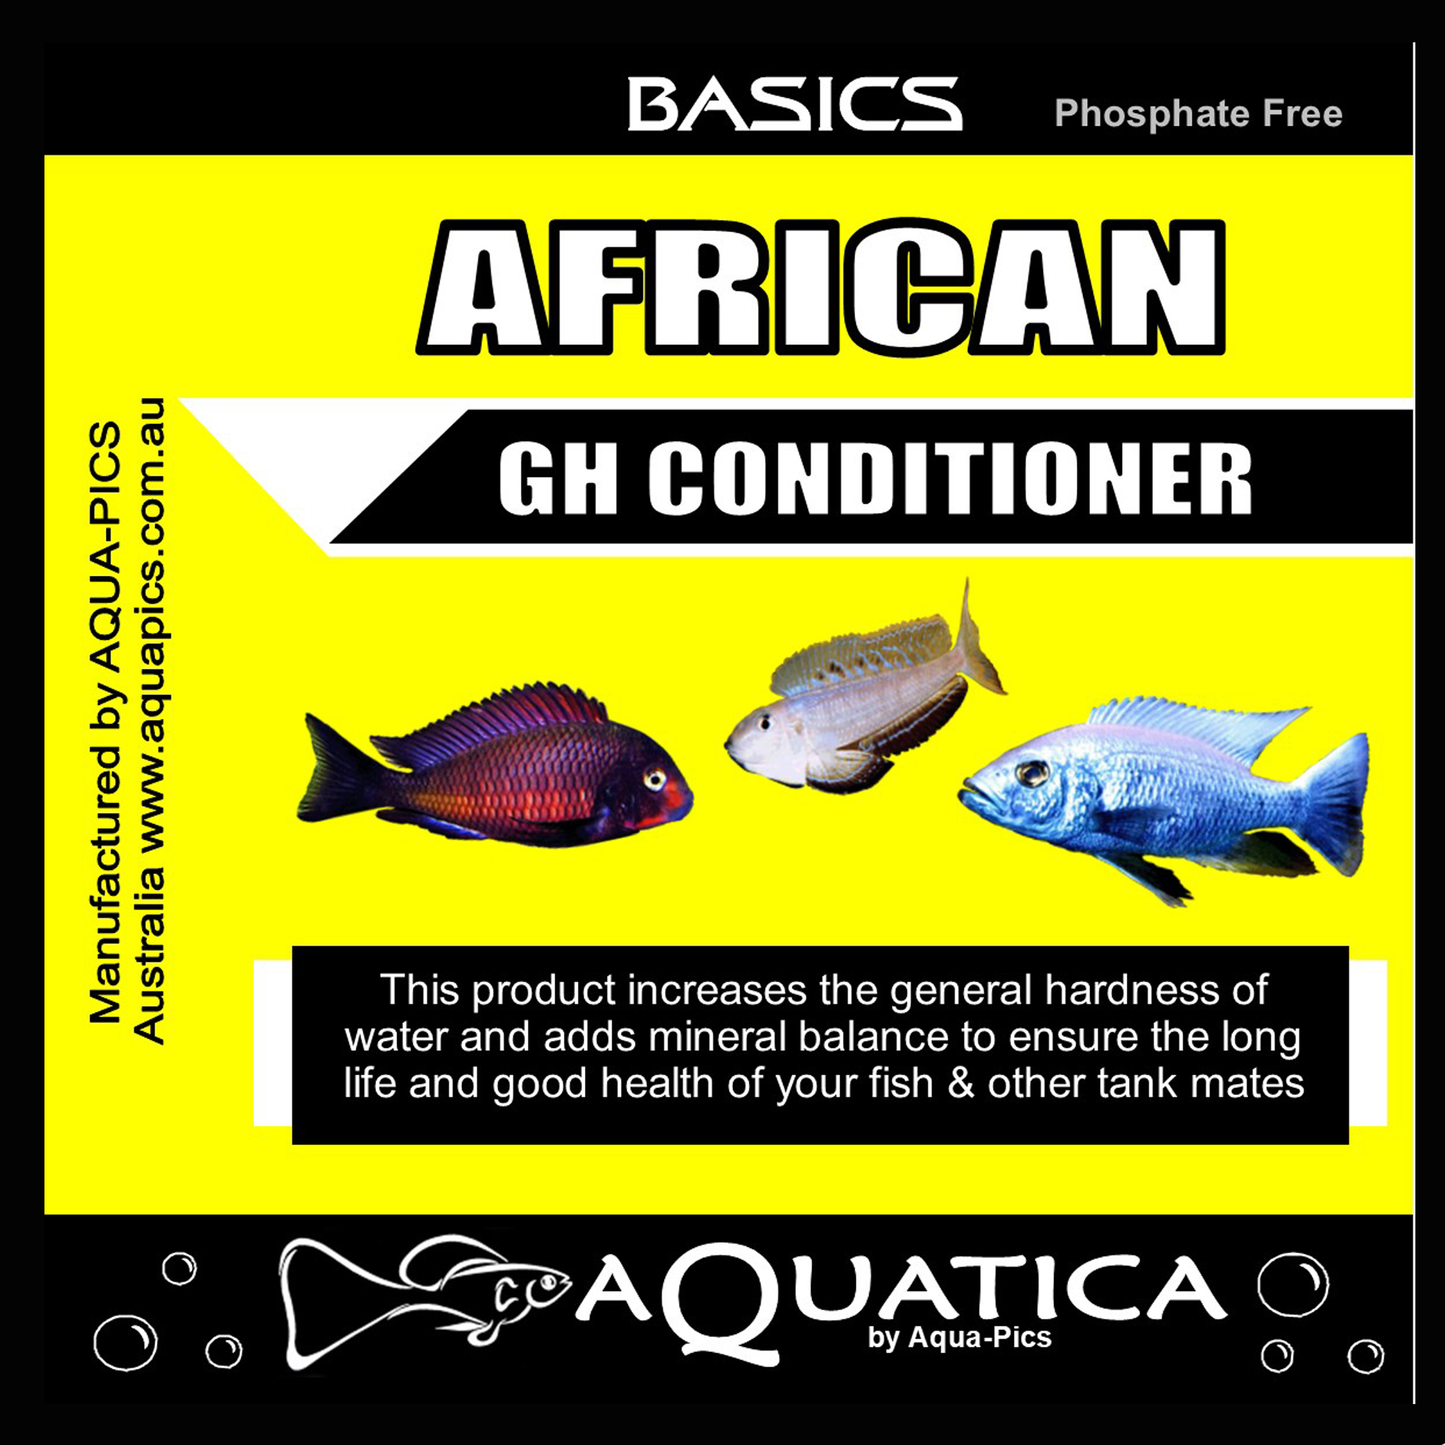 Aquatica Basics African GH Conditioner 2kg bag